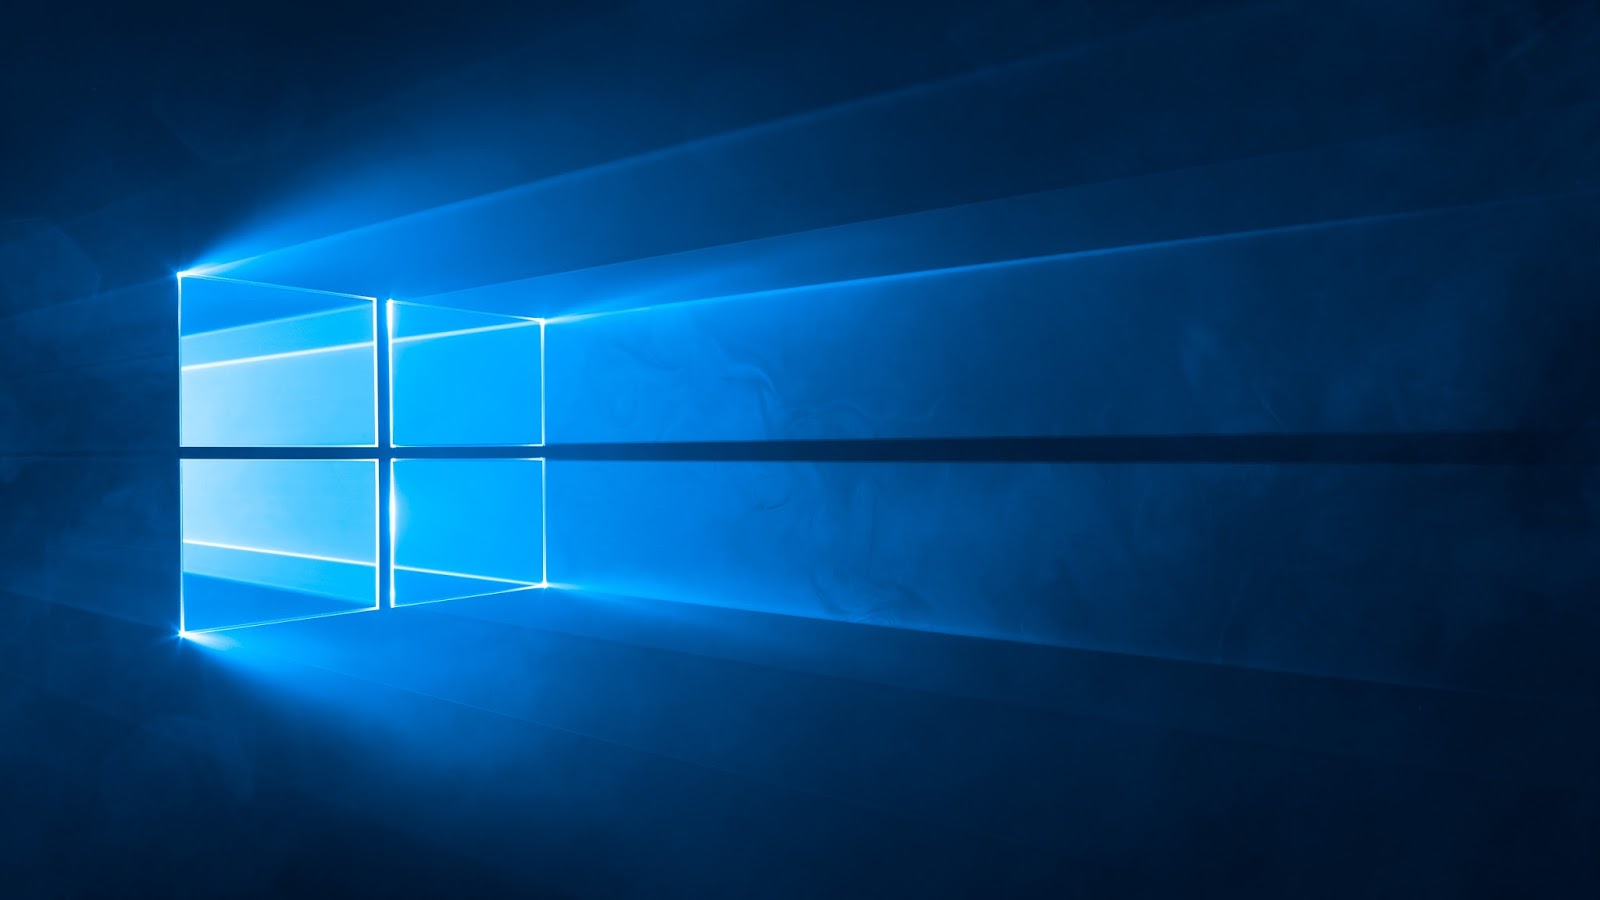 Hình nền lịch Windows 10: Tận hưởng tinh thần năng động và hiện đại của hệ điều hành Windows 10 với hình nền lịch độc đáo. Thay đổi hình nền hàng ngày để tạo cảm giác mới lạ cho máy tính của bạn.